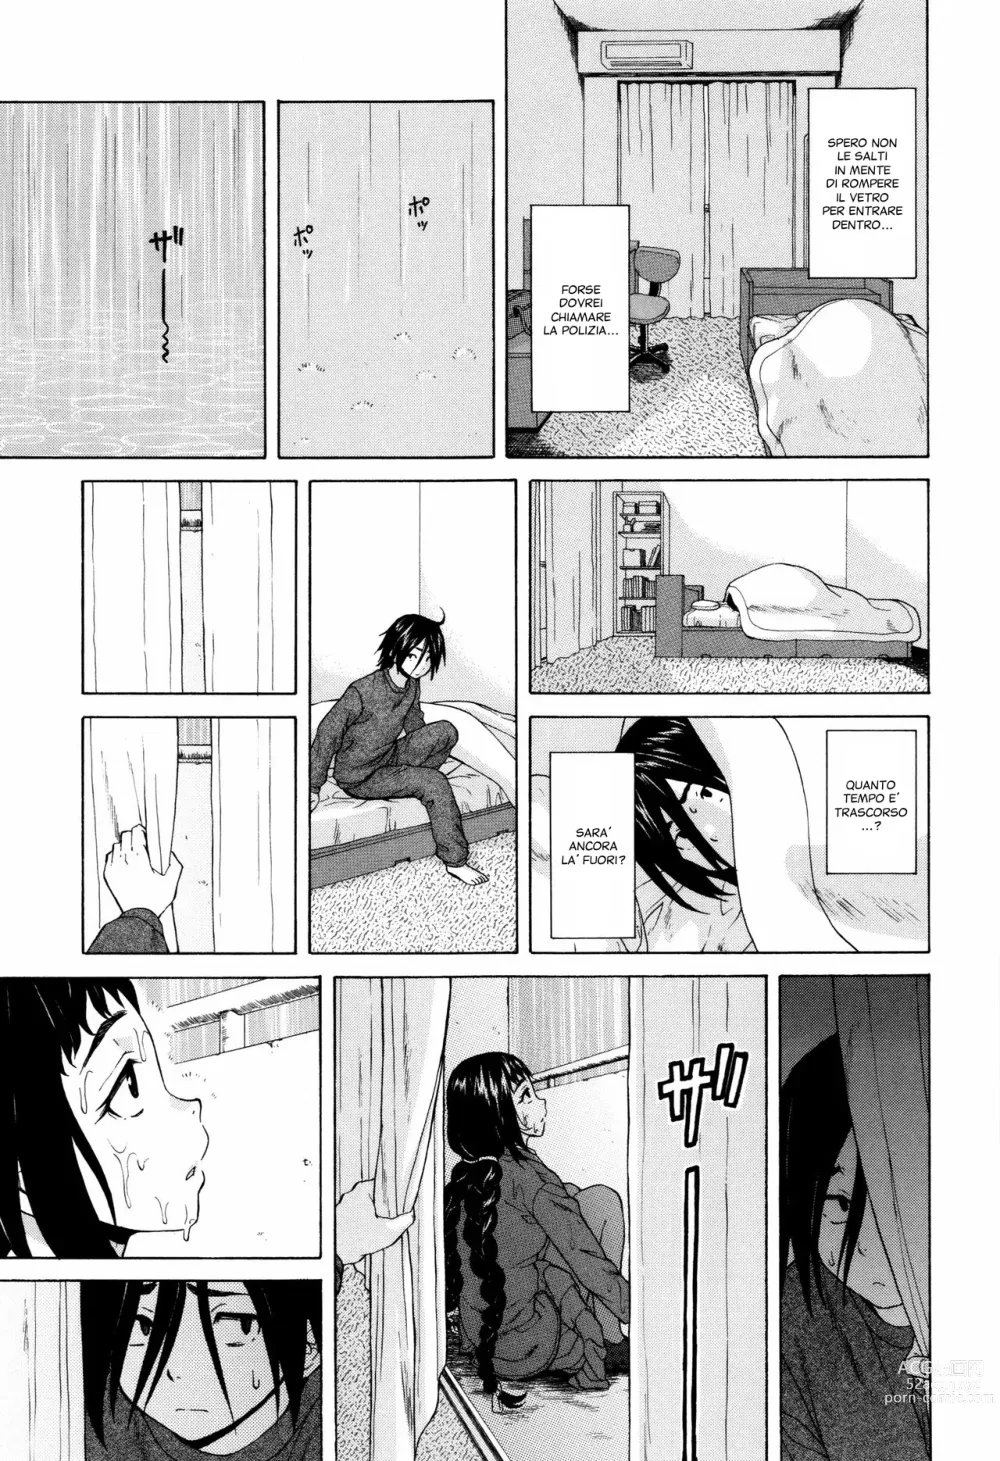 Page 18 of manga Segreti, Suicidi e Sorelle (decensored)